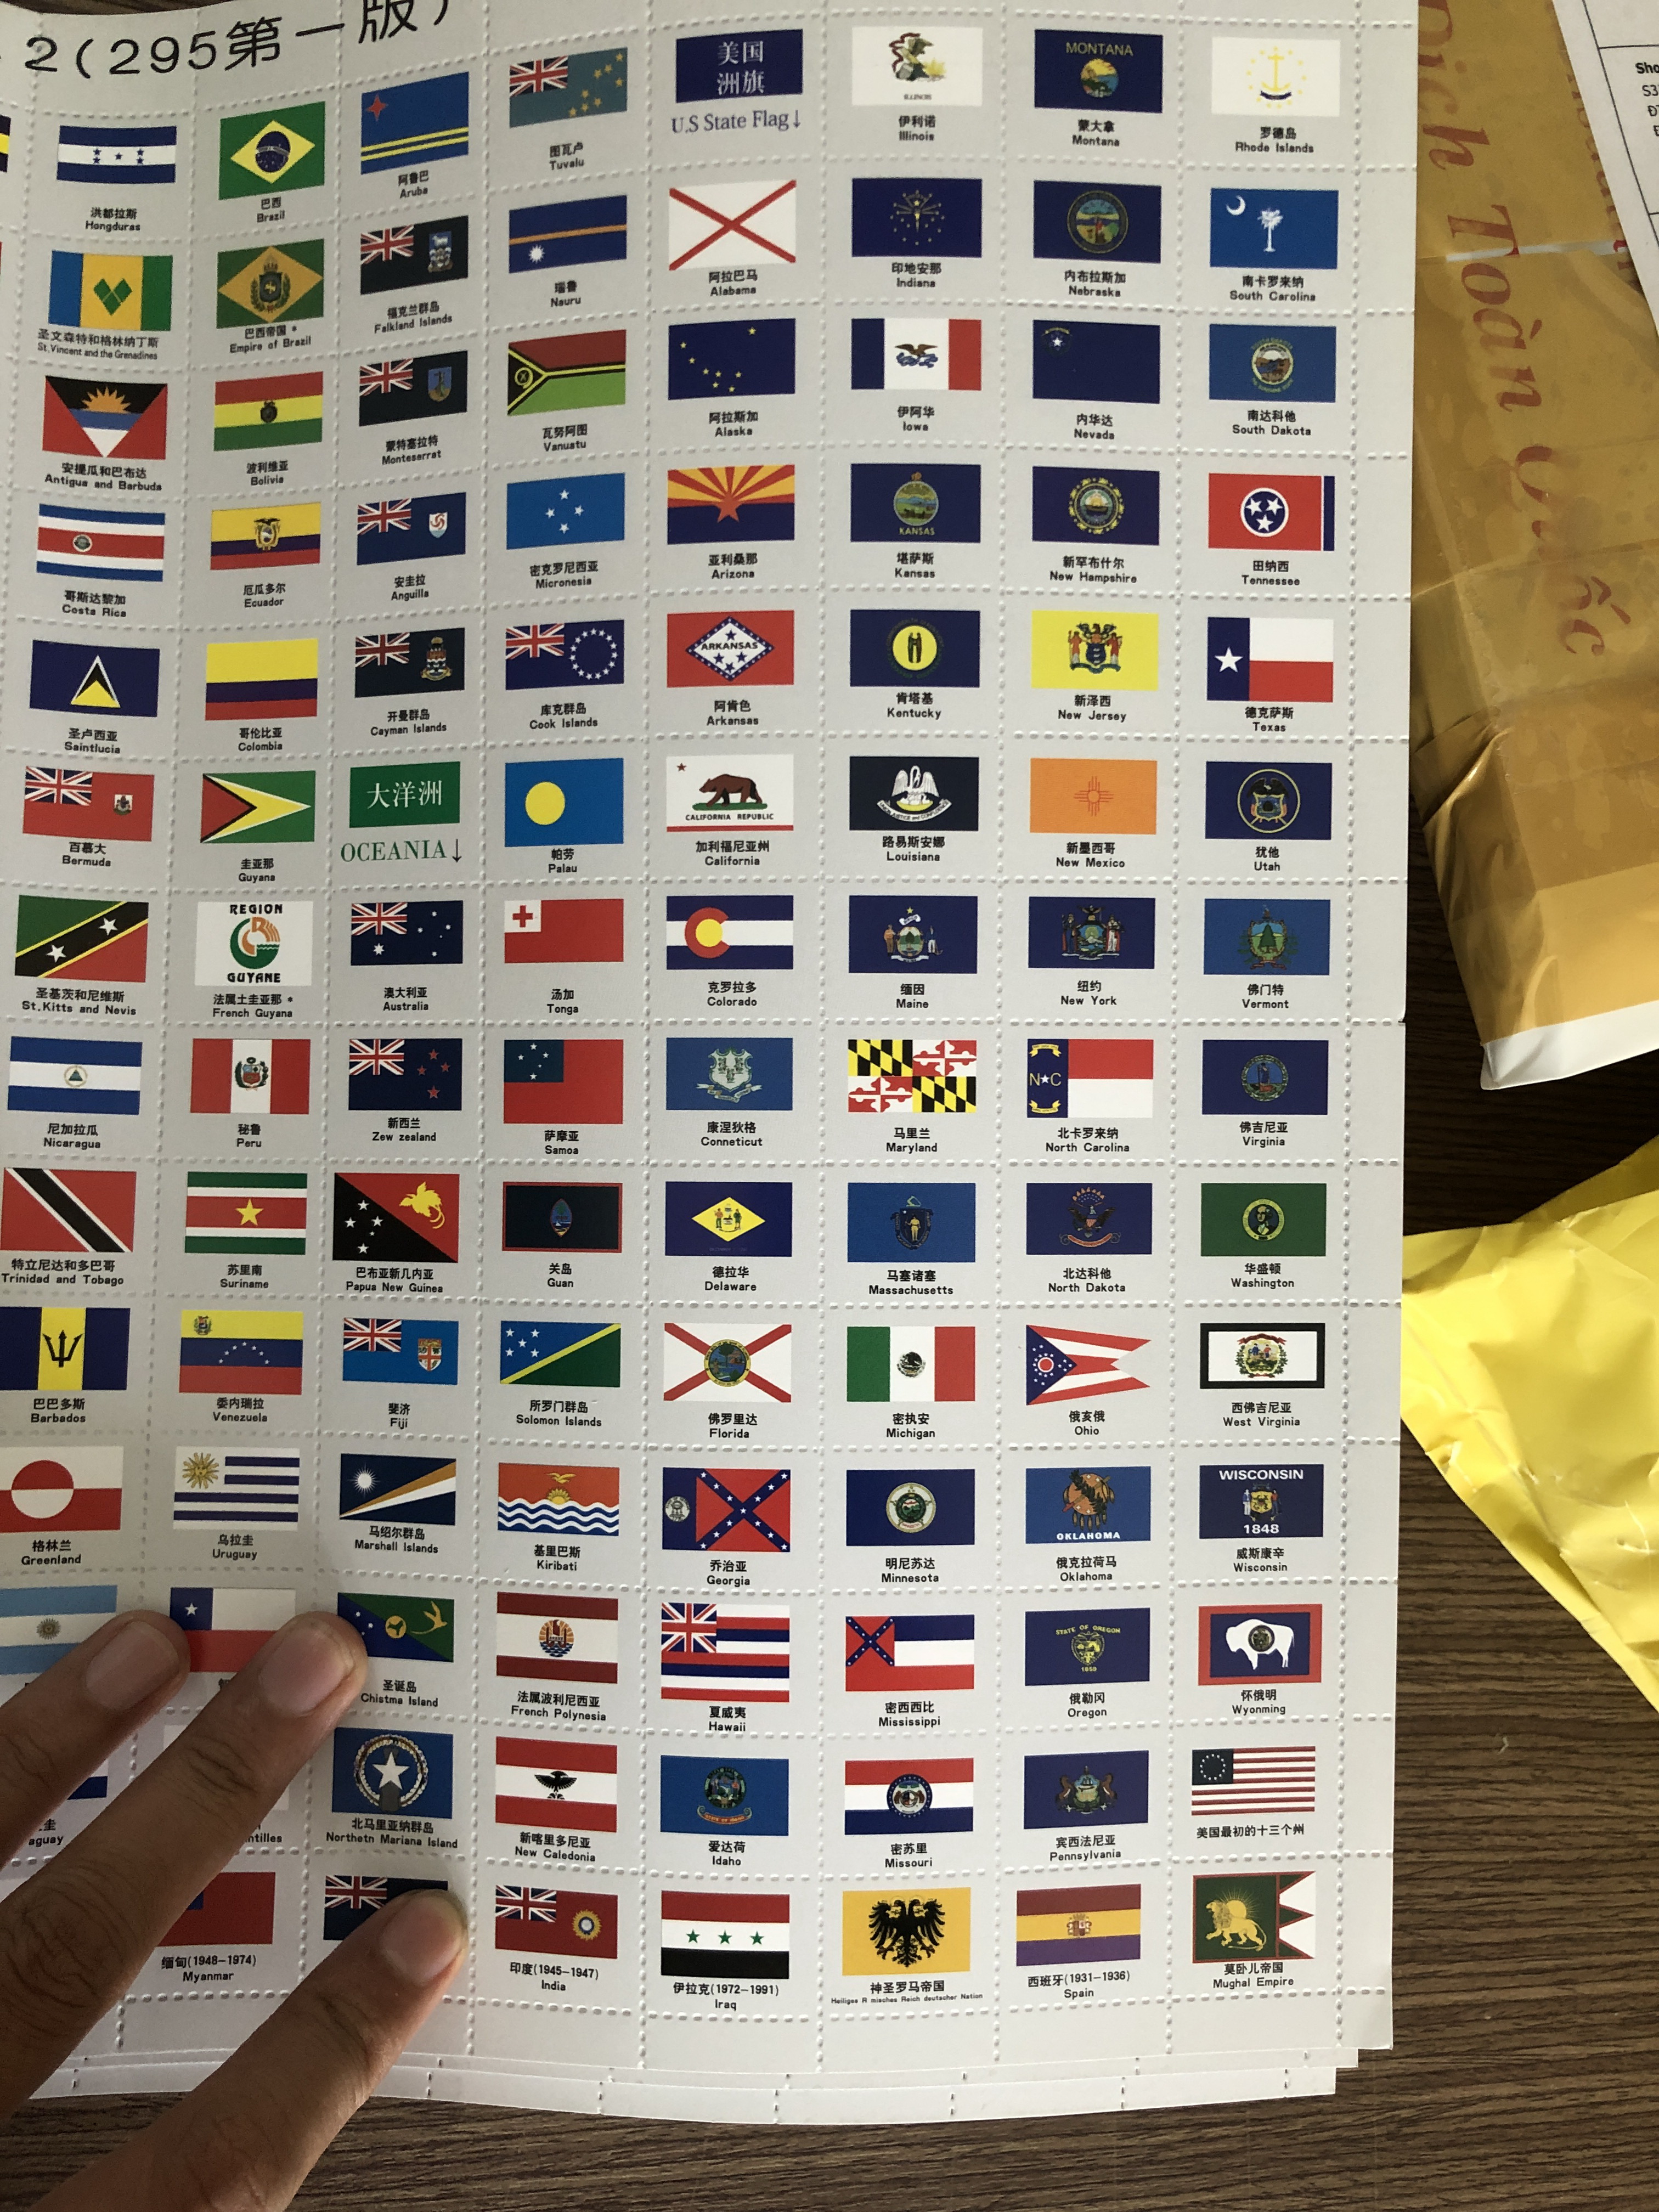 Bộ Quốc Kỳ Các Nước Trên Thế Giới và 50 Tiểu Bang của Mỹ (295 cờ)